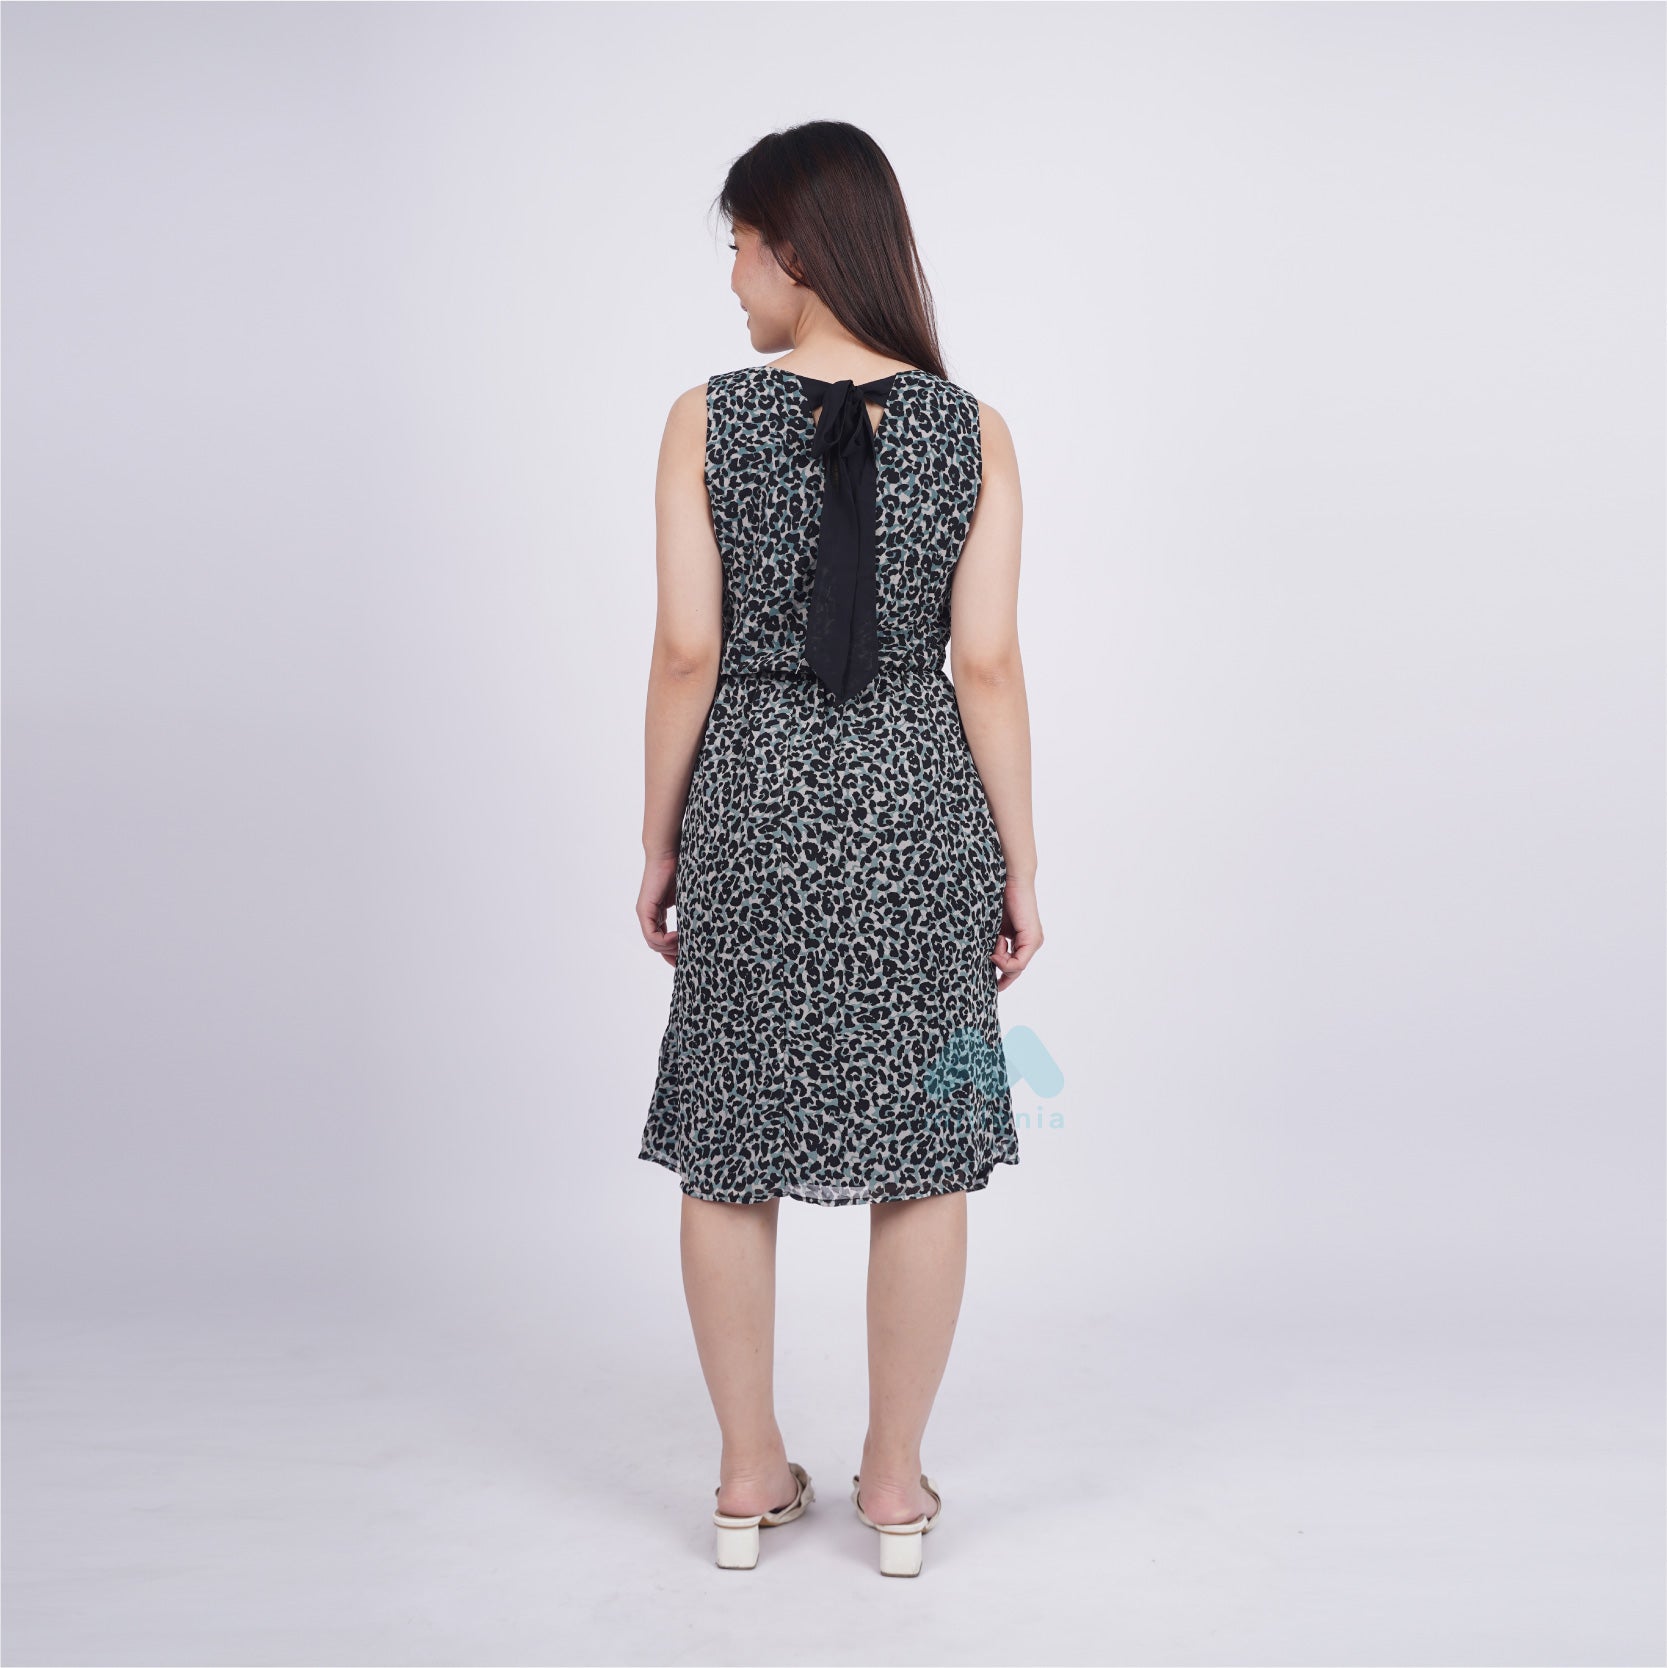 Dress Wanita Casual Tanpa Lengan Model Midi  [CG-EDCD 18]